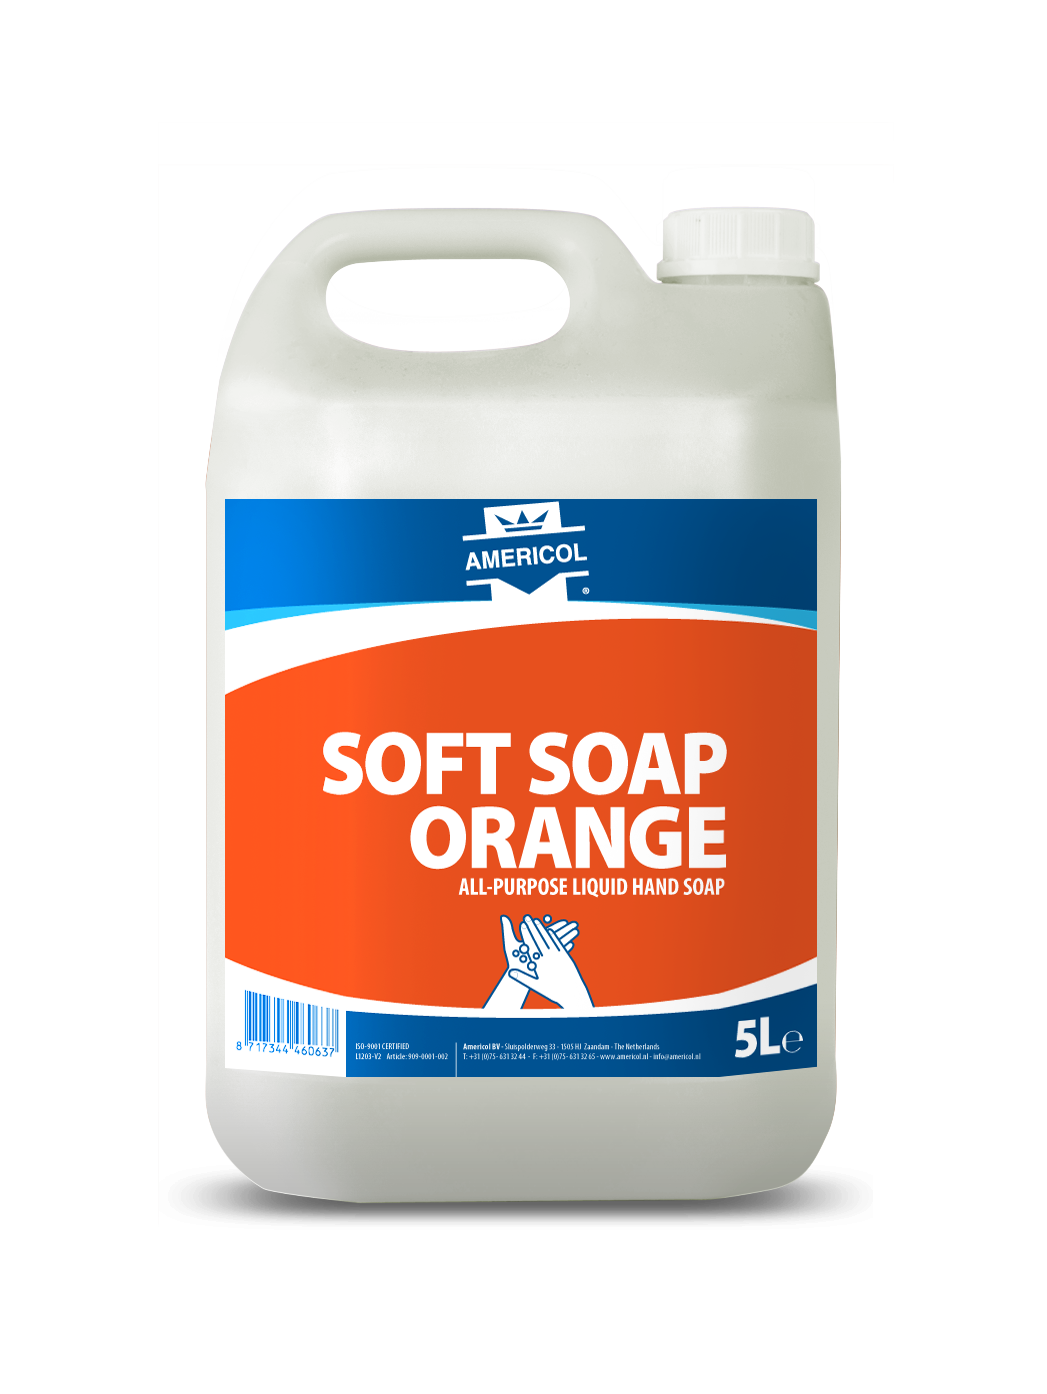 AMERICOL soft soap orange